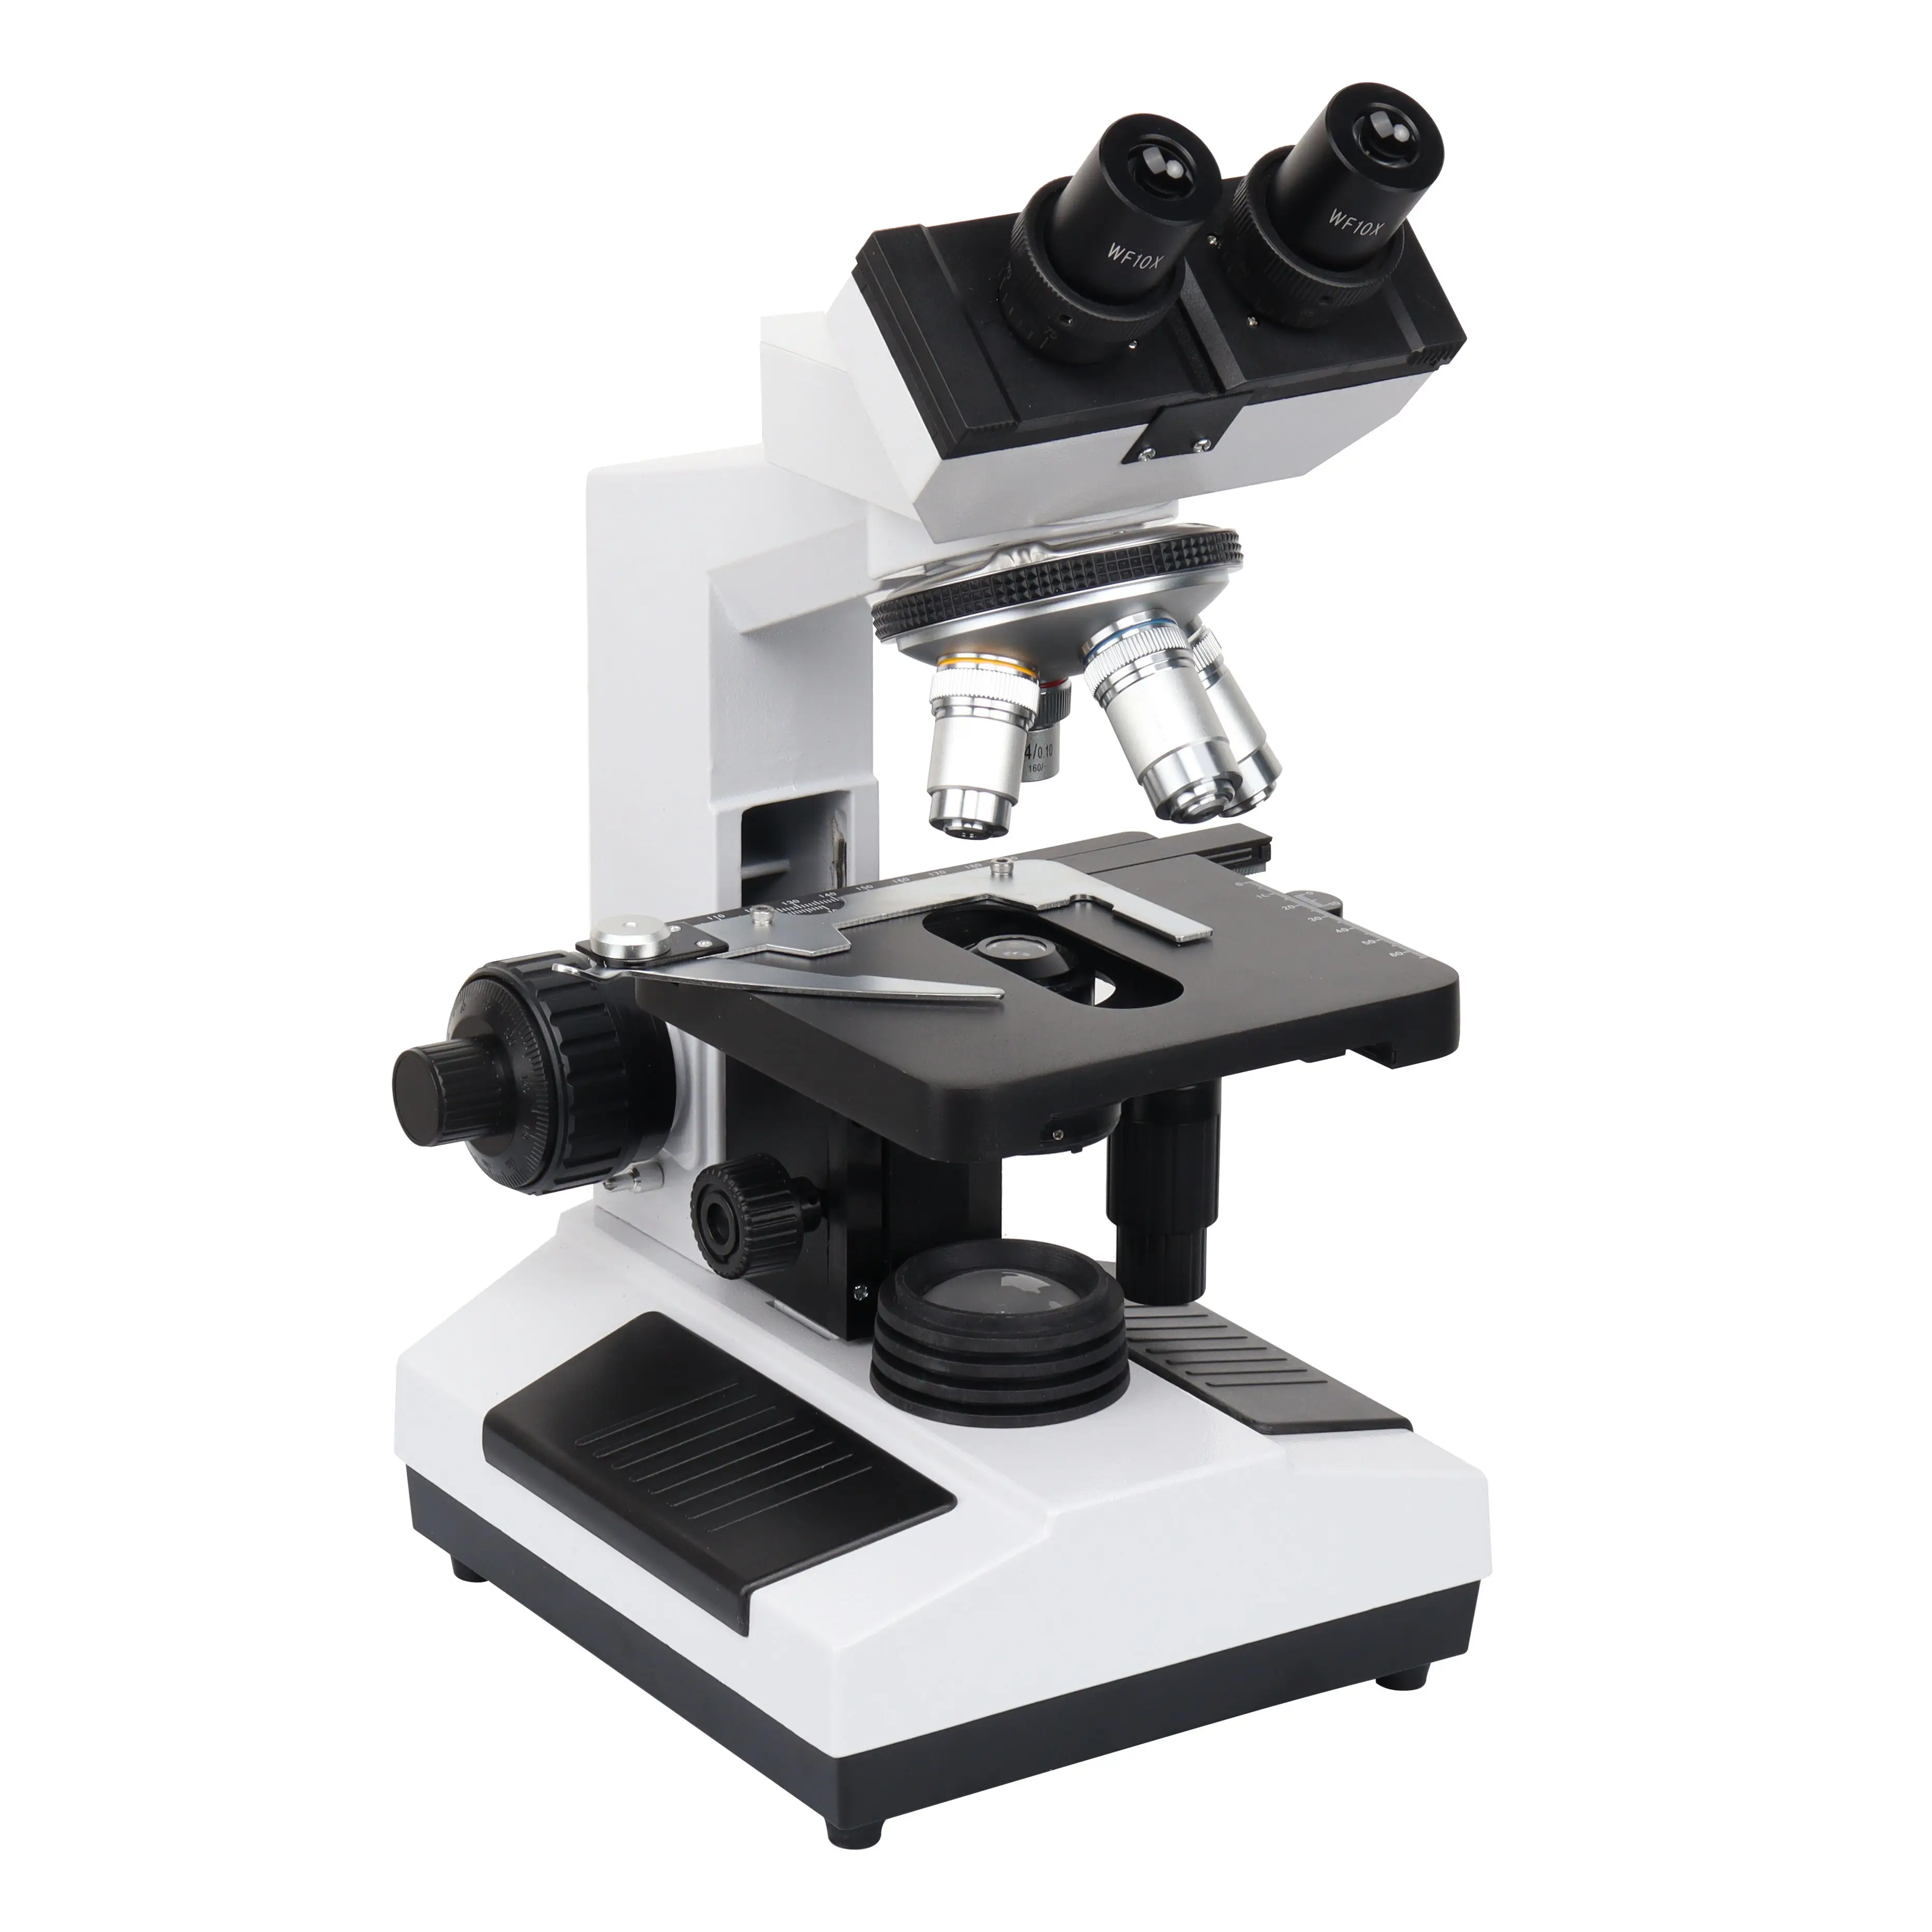 Beste kwaliteit HXSZ-107BN Medische laboratorium microscoop binoculaire microscoop